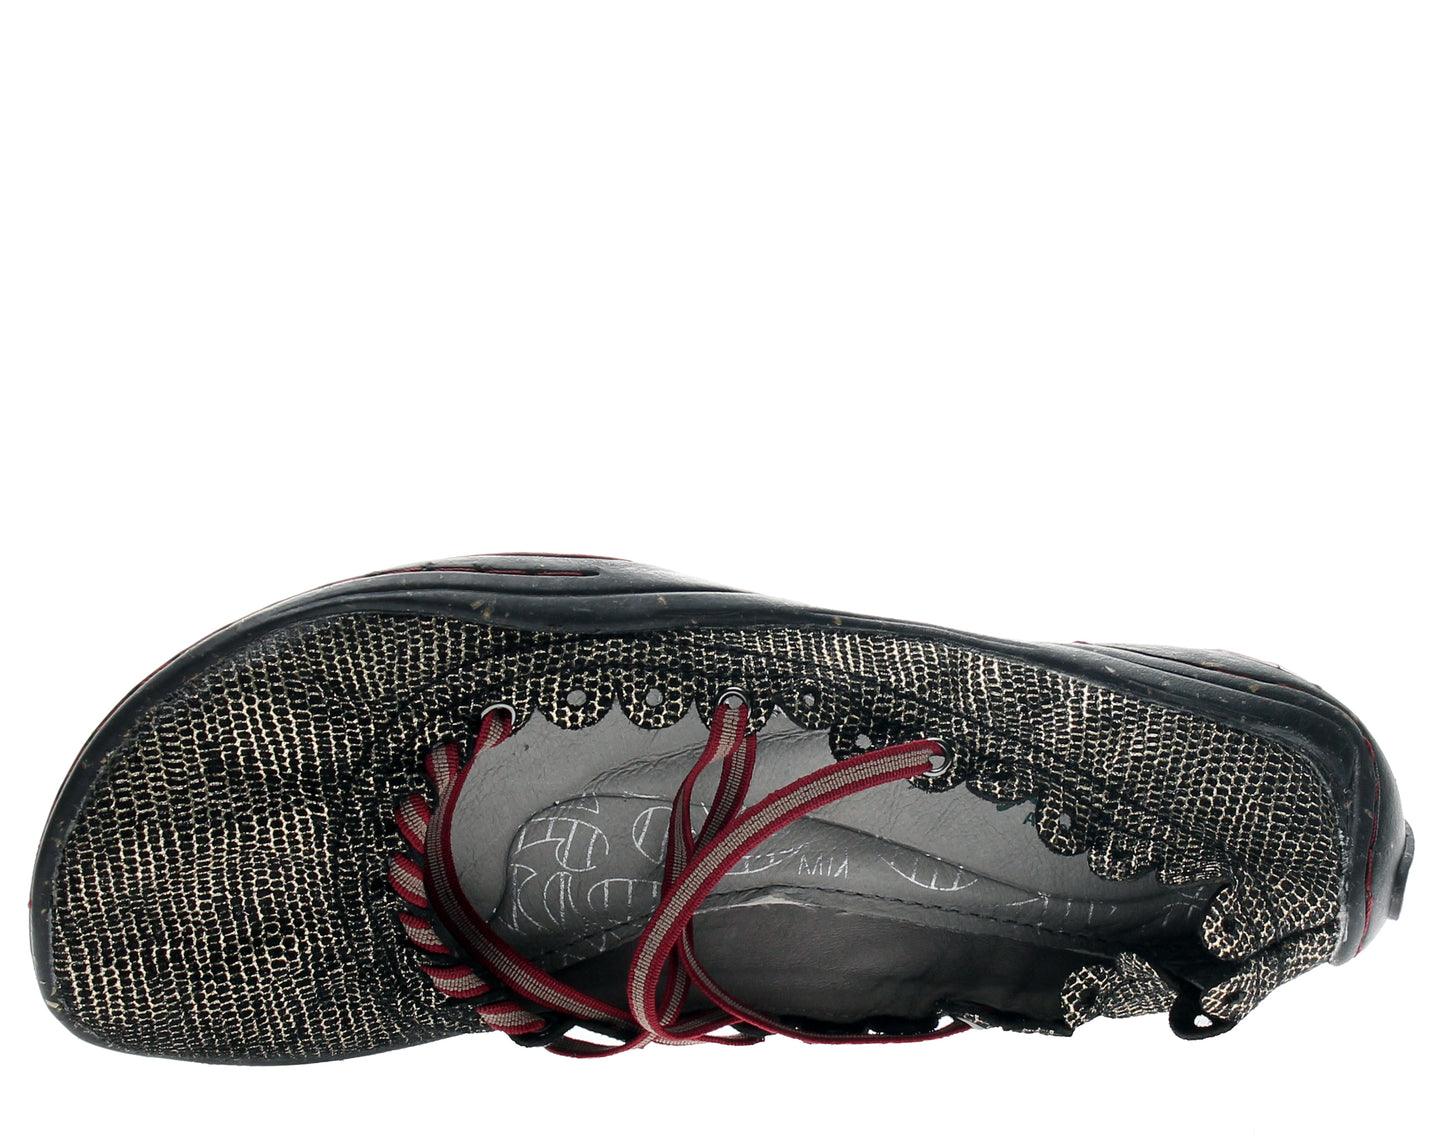 Jambu Kettle Black Women's Ballerina Flat Shoes WJ15KTT01